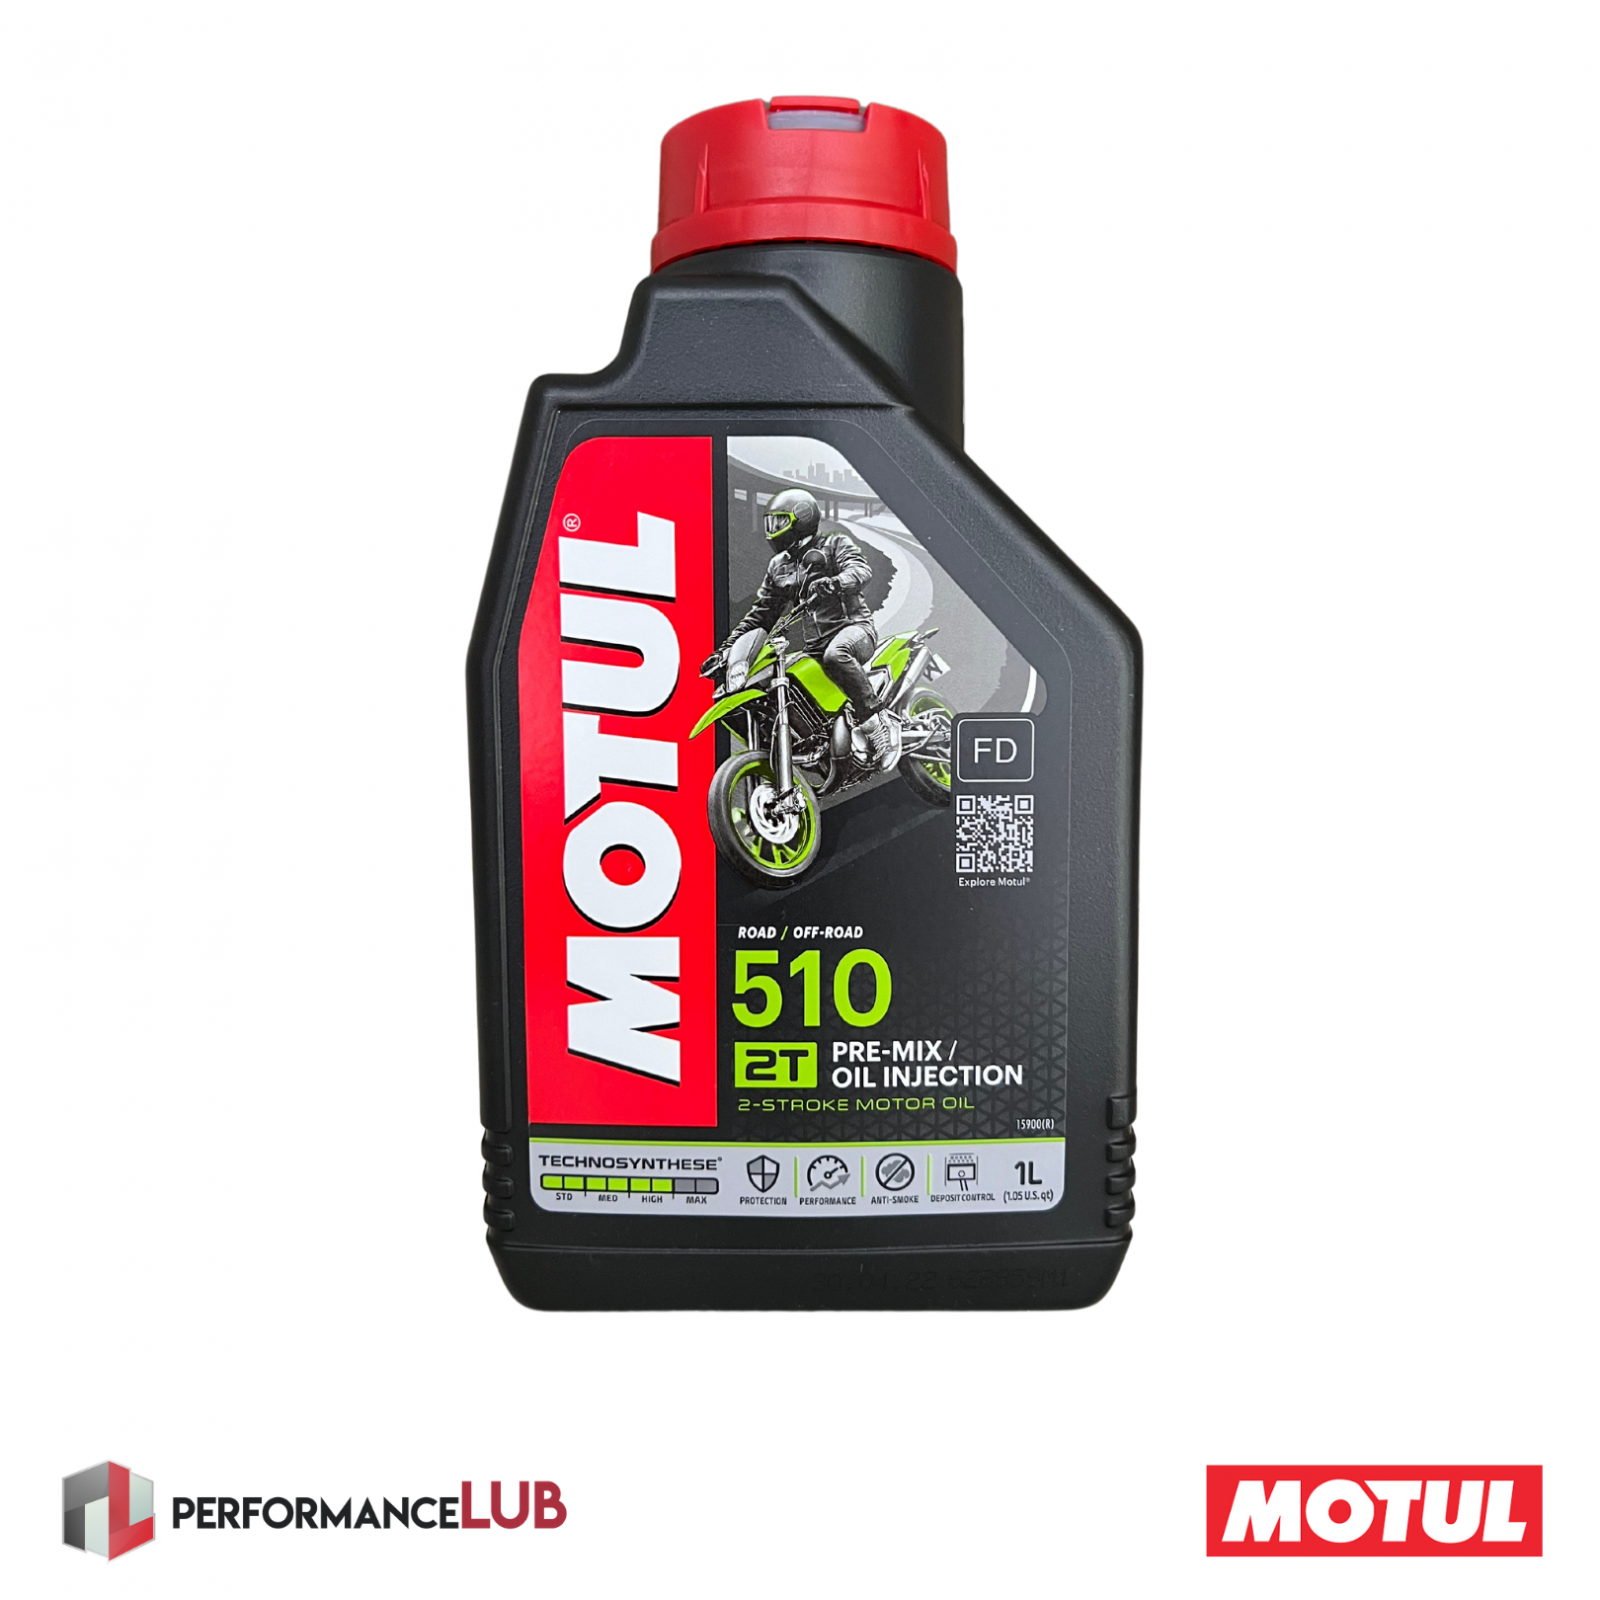 Motul 510 2T (API TC) - 1 litro - PerformanceLUB Lubrificantes Premium